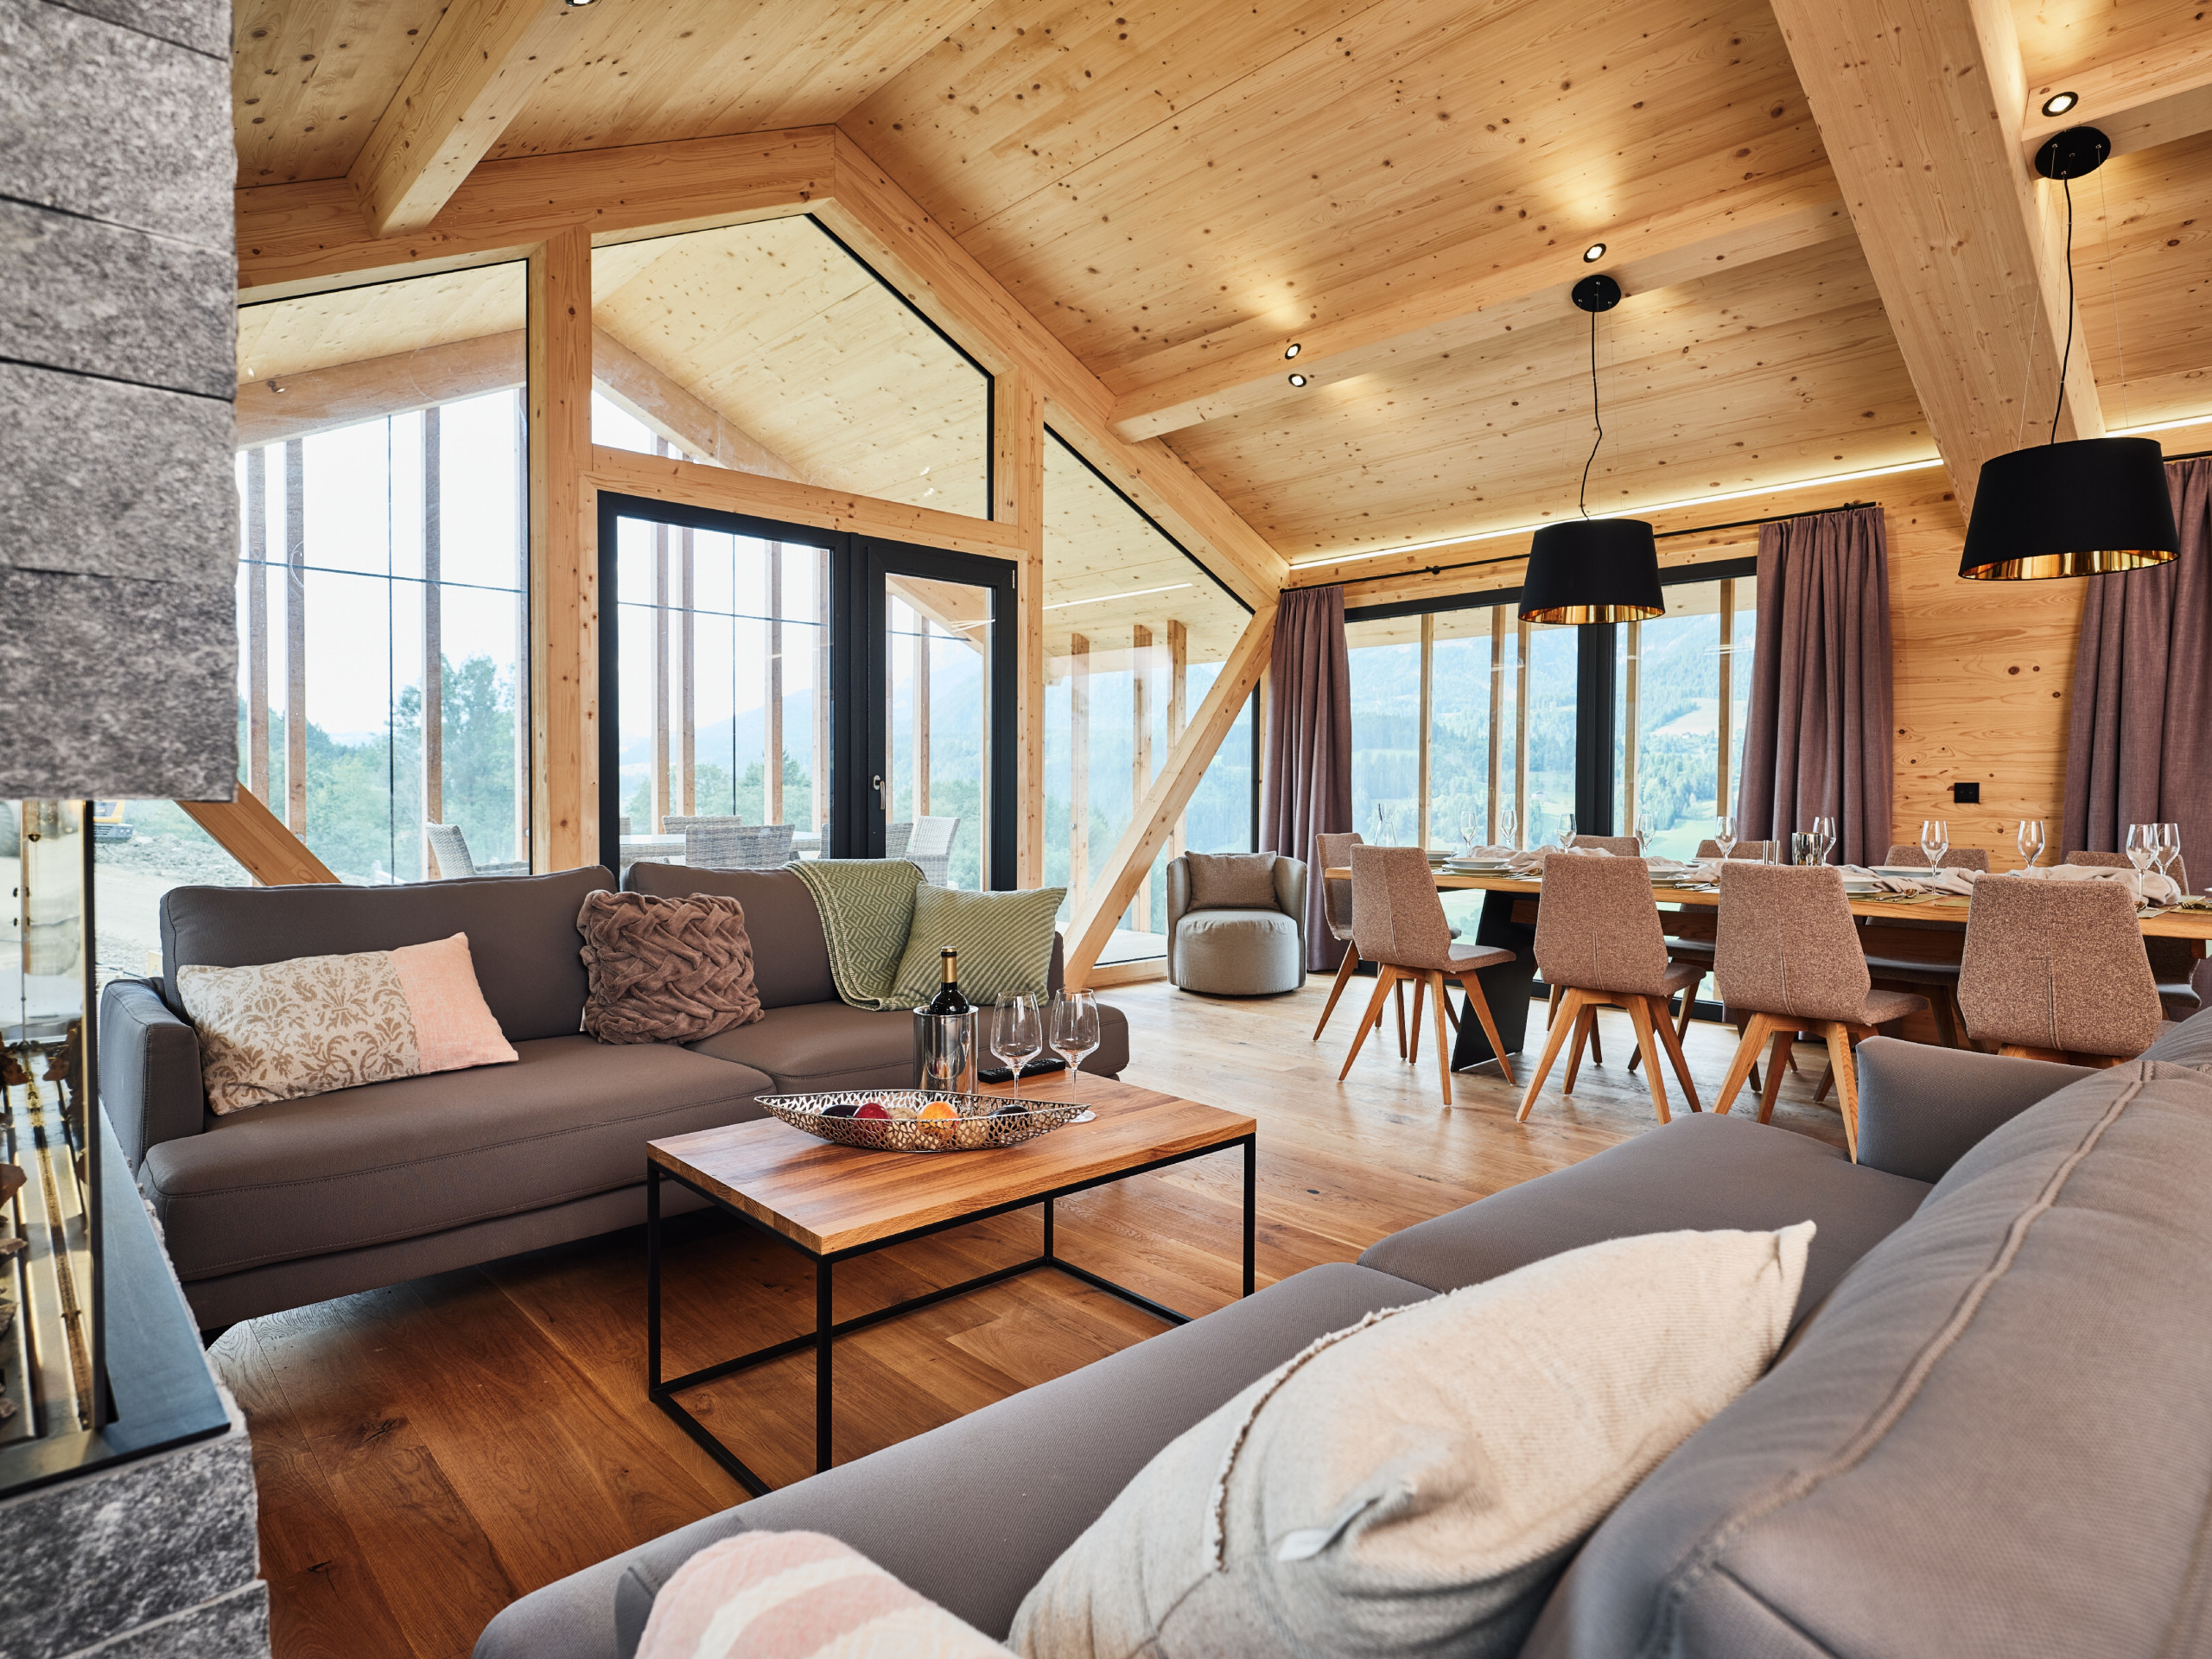  in Haus im Ennstal - Premium Ferienhaus mit 5 Schlafzimmern, Sauna & Pool